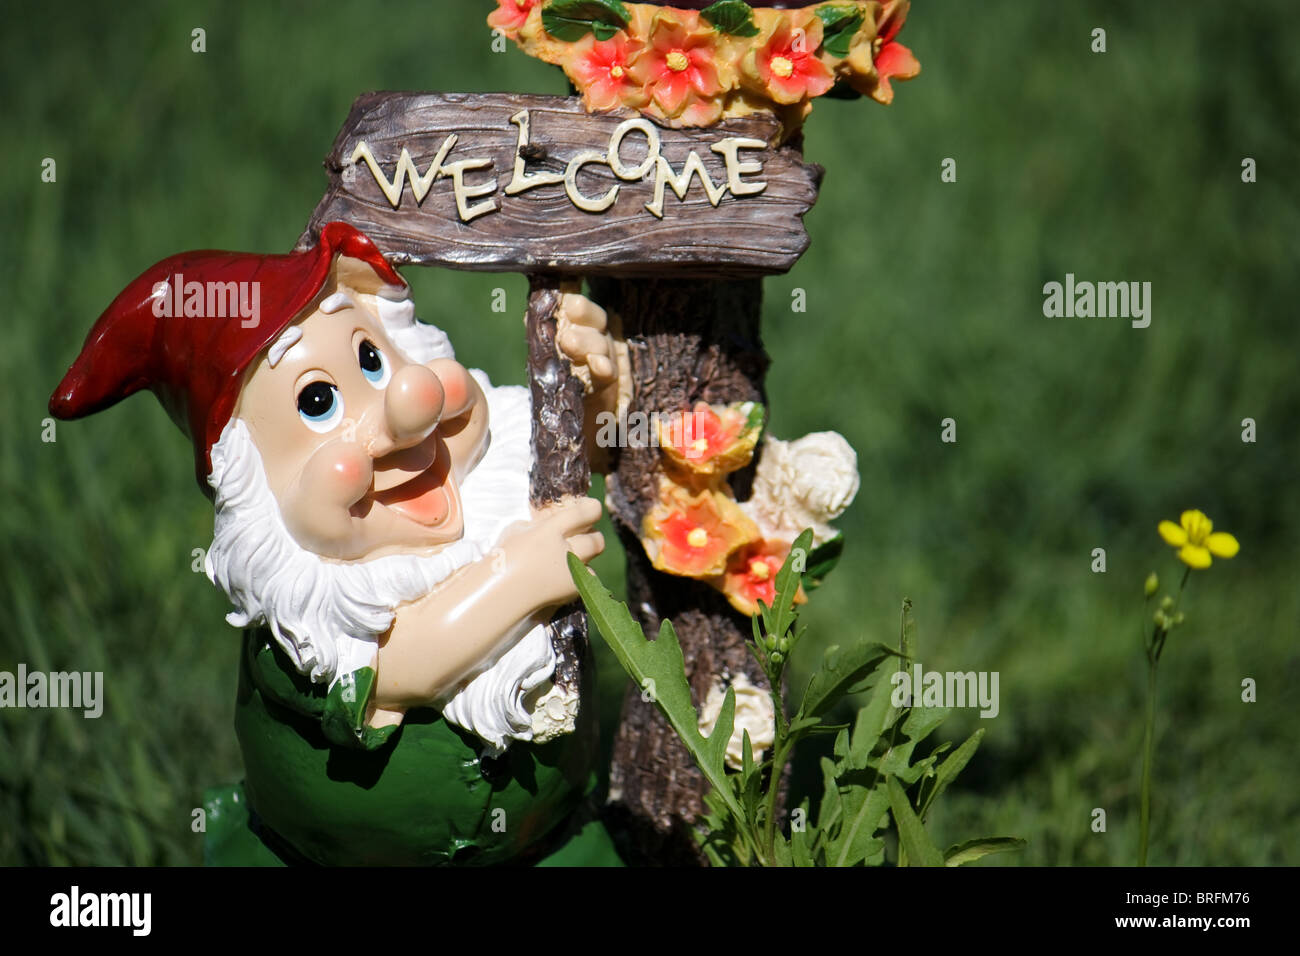 Gartenzwerg mit welcome board Stockfoto